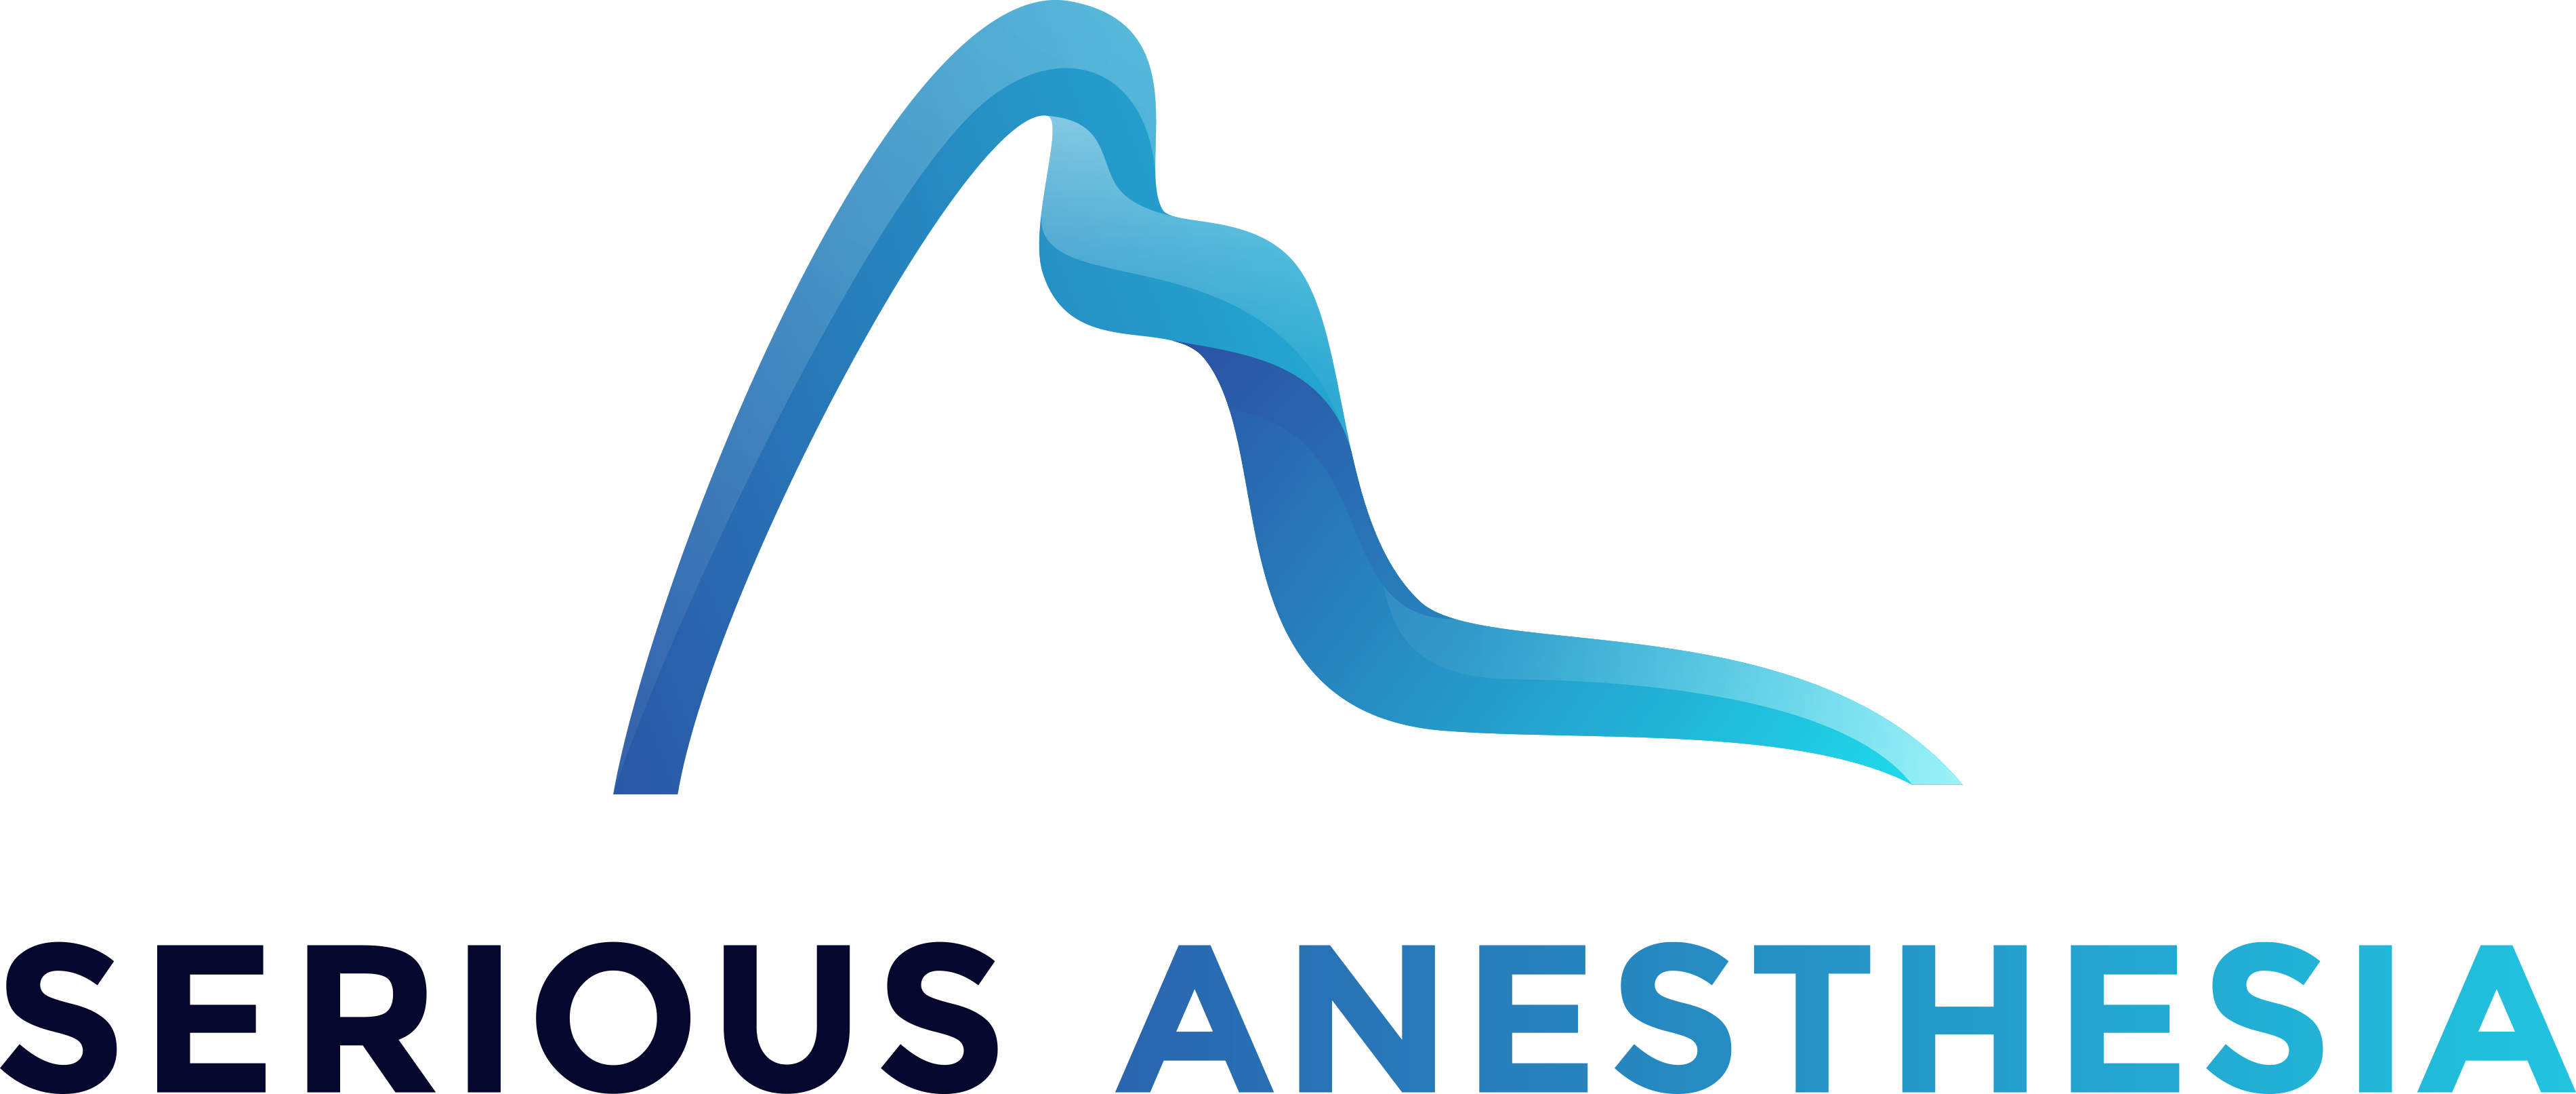 Stichting Serious Anesthesia logo